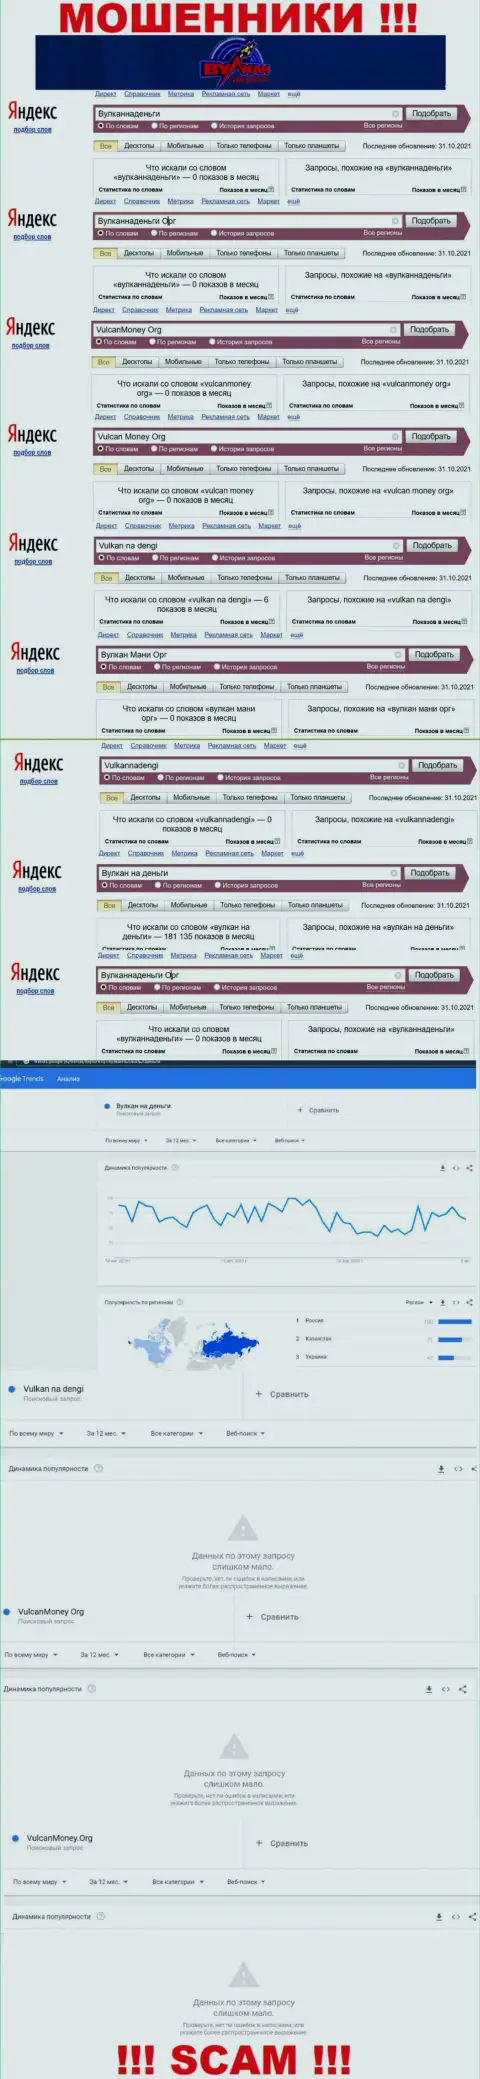 Подробный анализ числа online запросов в поисковиках всемирной интернет сети по мошенникам Vulkan na dengi